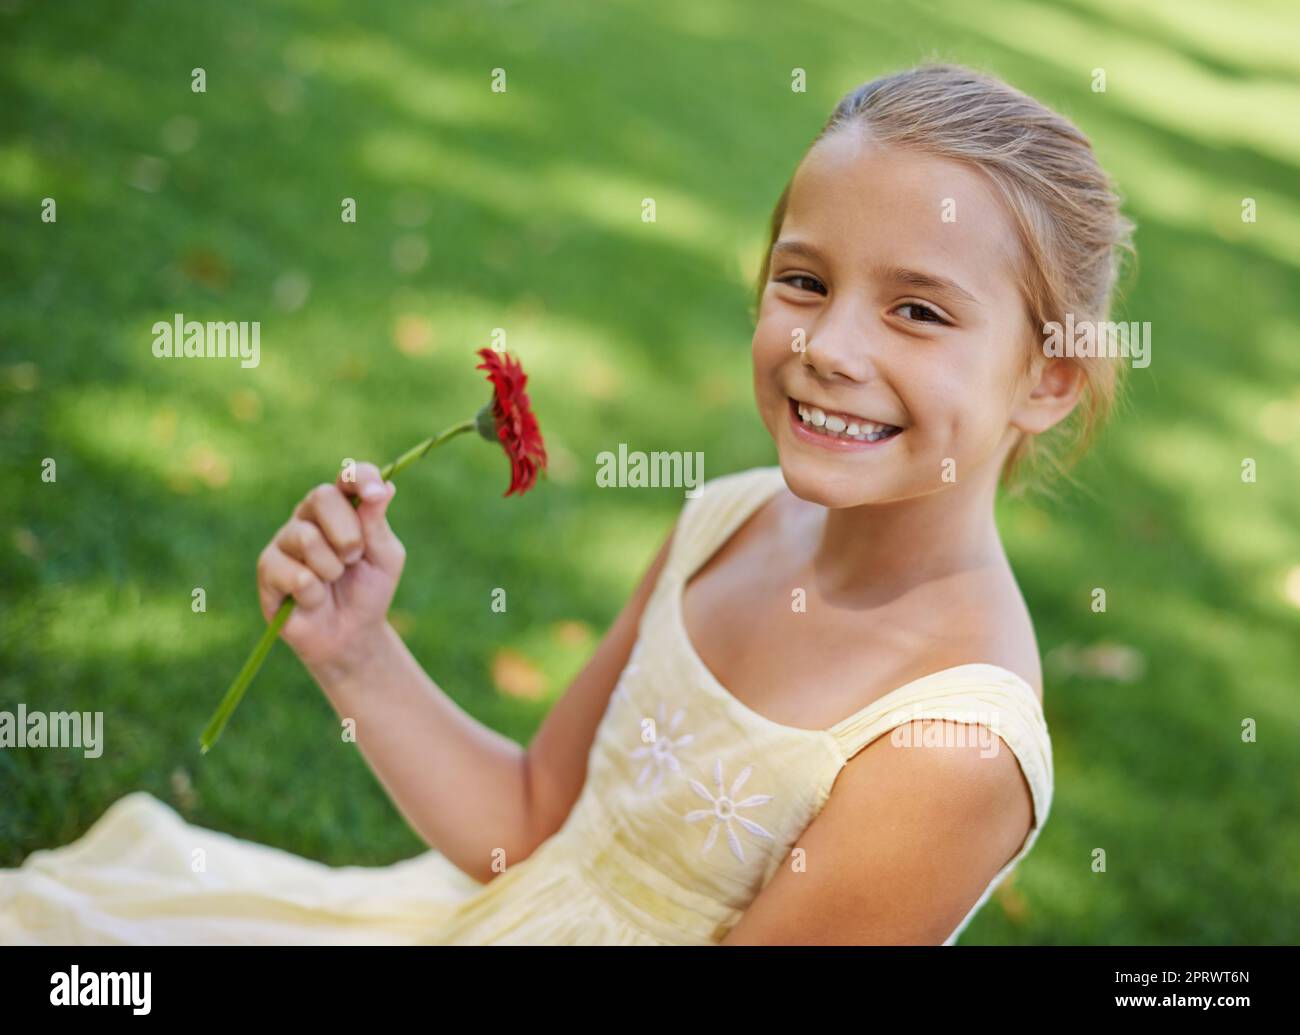 Une belle fleur pour une belle fille. Un portrait d'une belle petite fille tenant assis dehors sur l'herbe avec une belle fleur rouge Banque D'Images